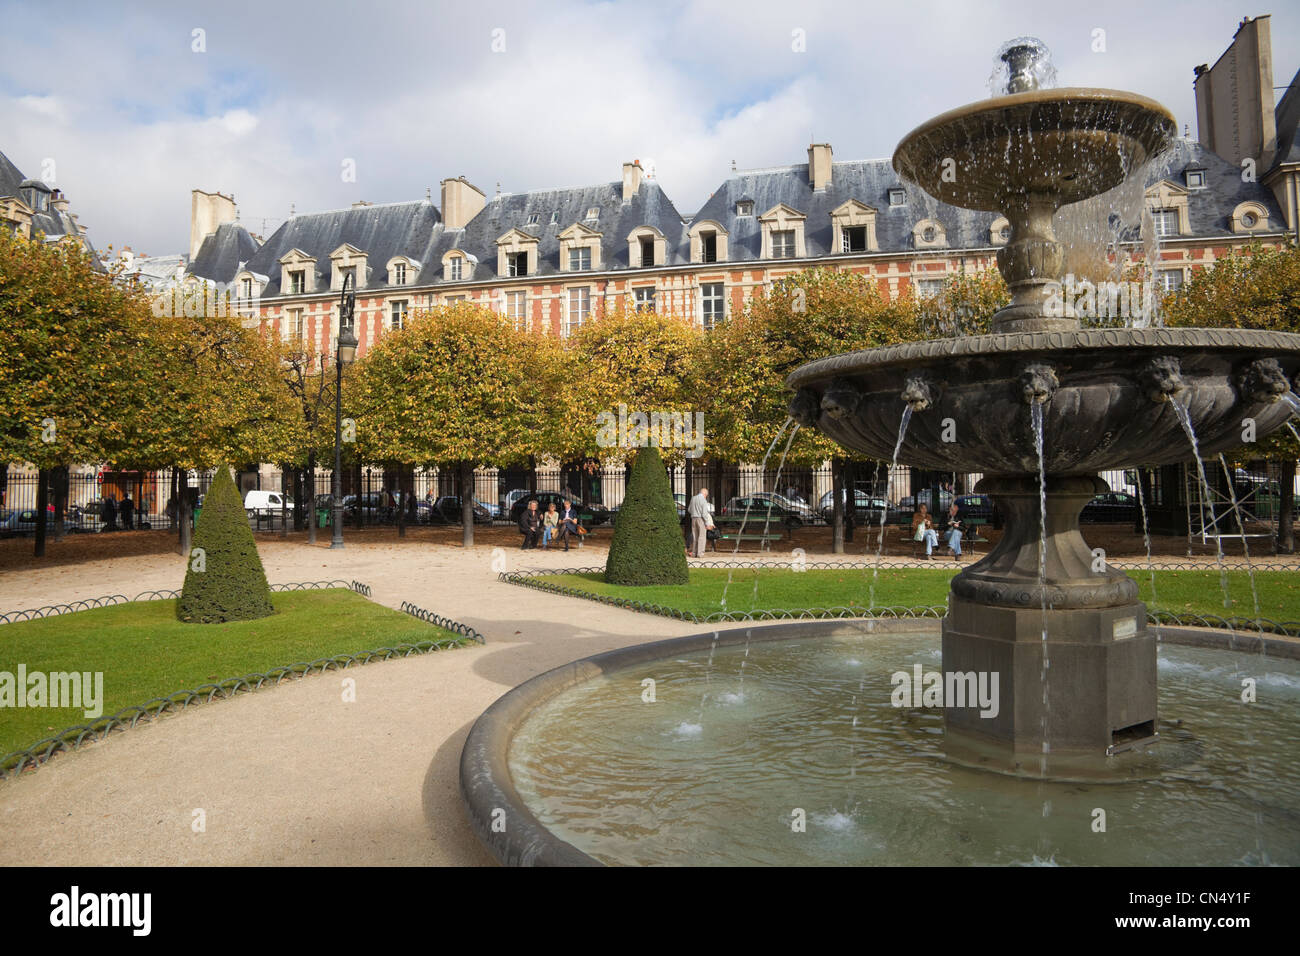 Fountain in Place de Louis XIII garden, Paris, France Stock Photo